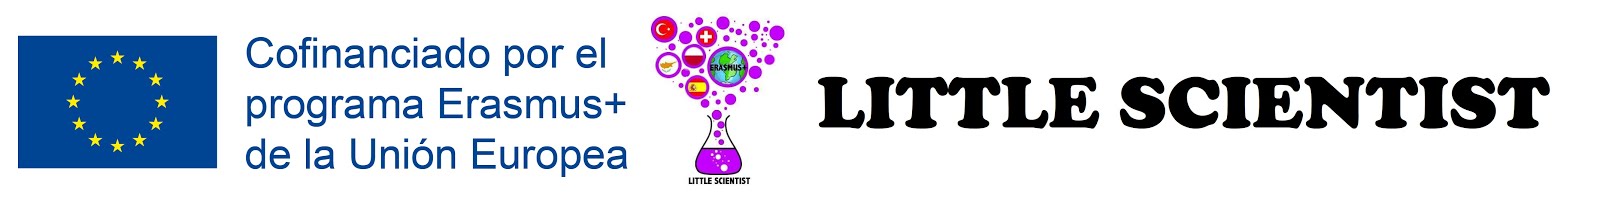 LITTLE SCIENTIST